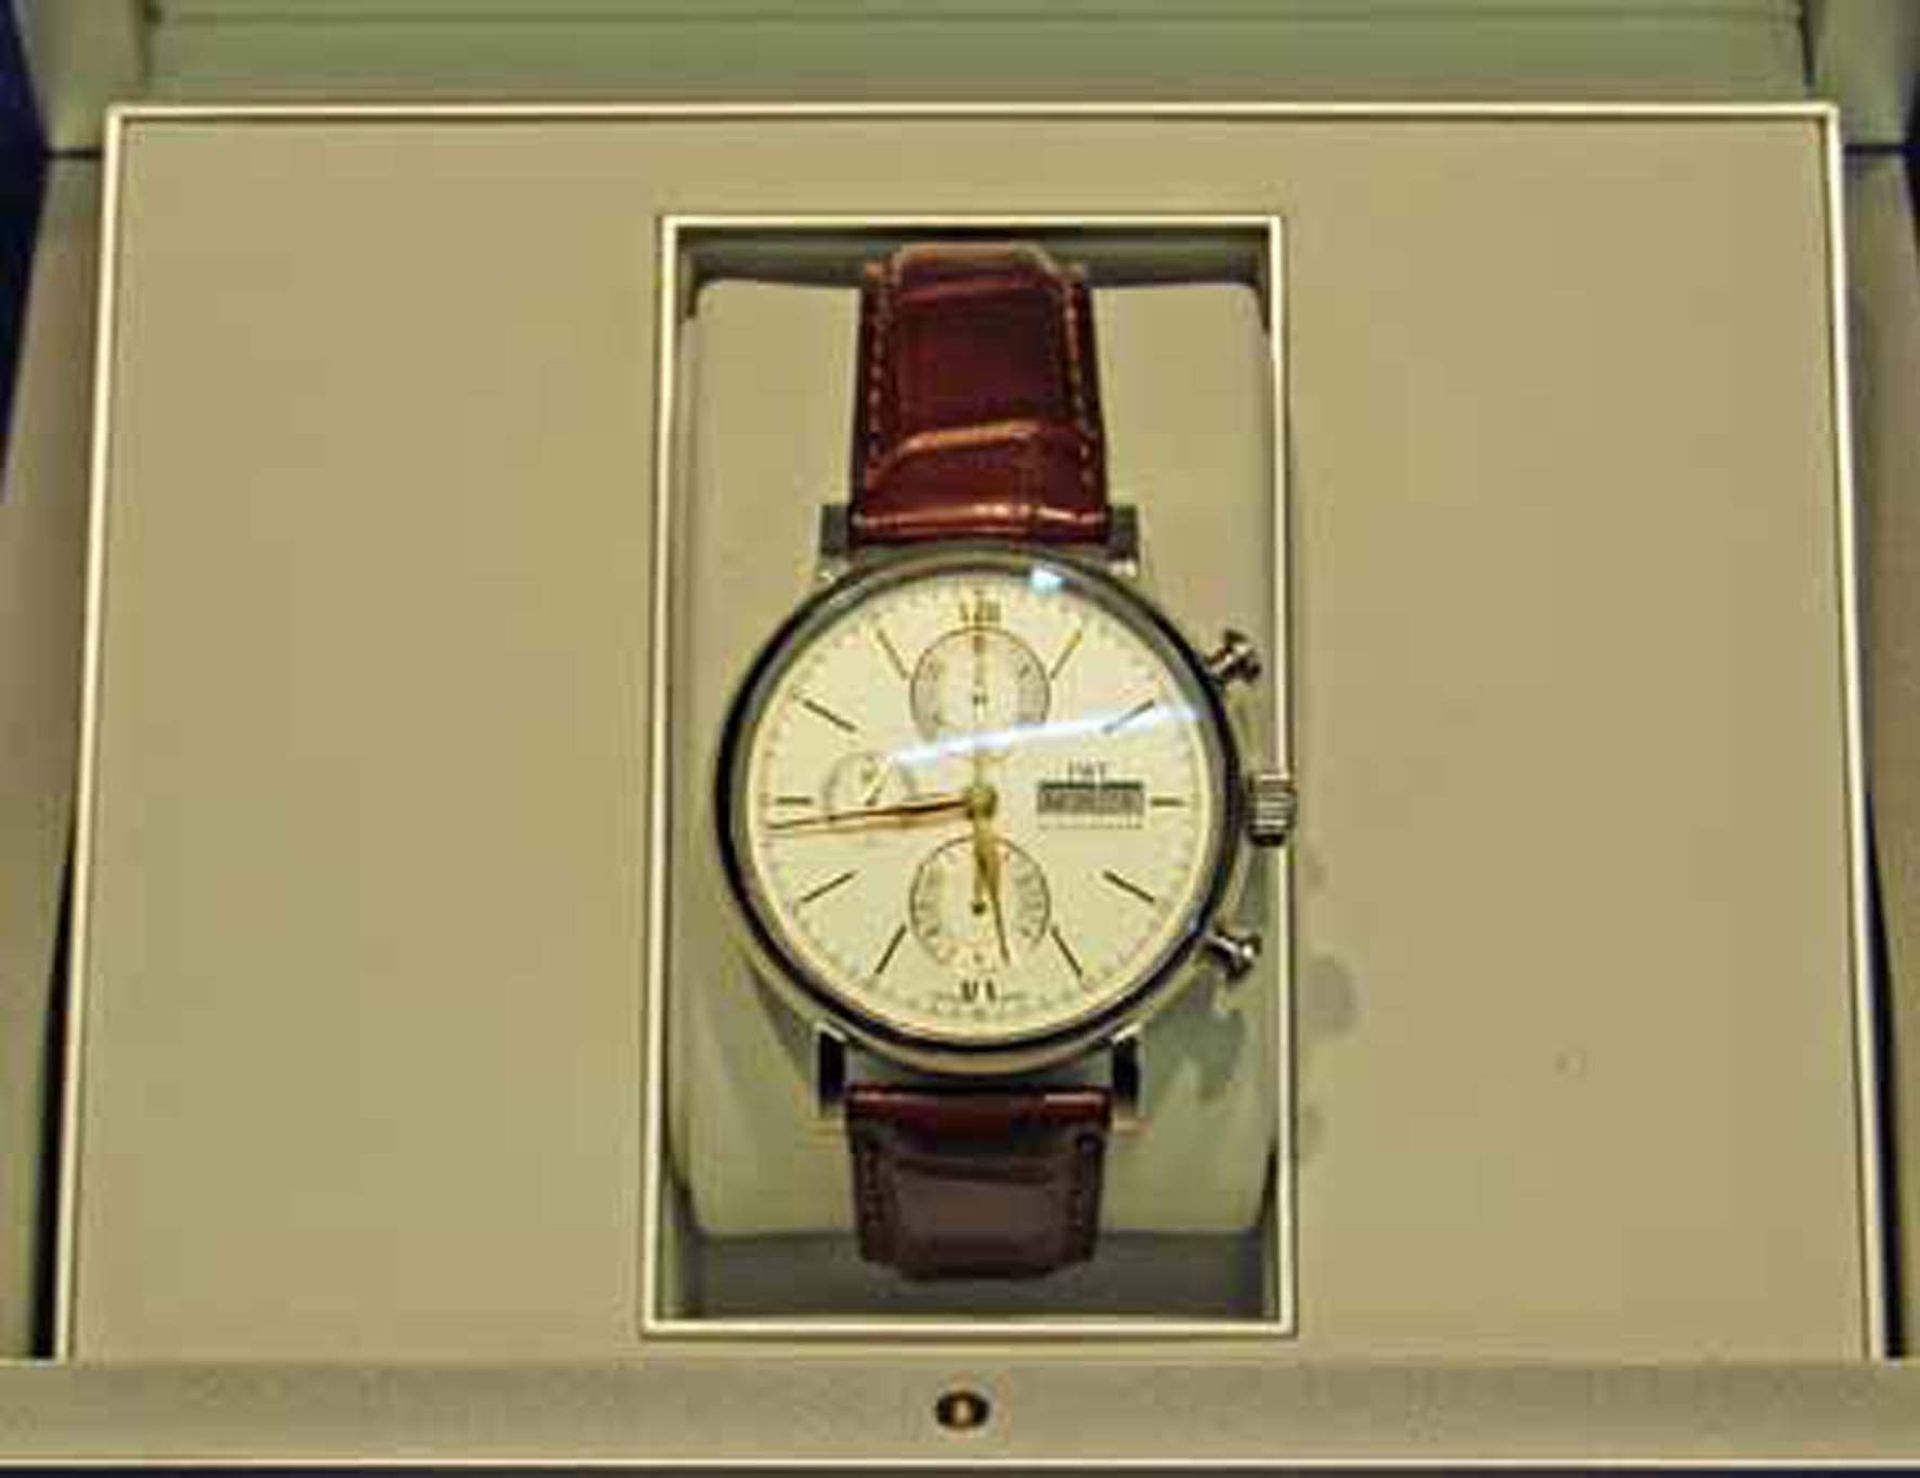 IWC SCHAFFHAUSEN Portofino Gentleman’s Stainless Steel Chronograph Wrist Watch, Day/Date Function, - Bild 3 aus 4